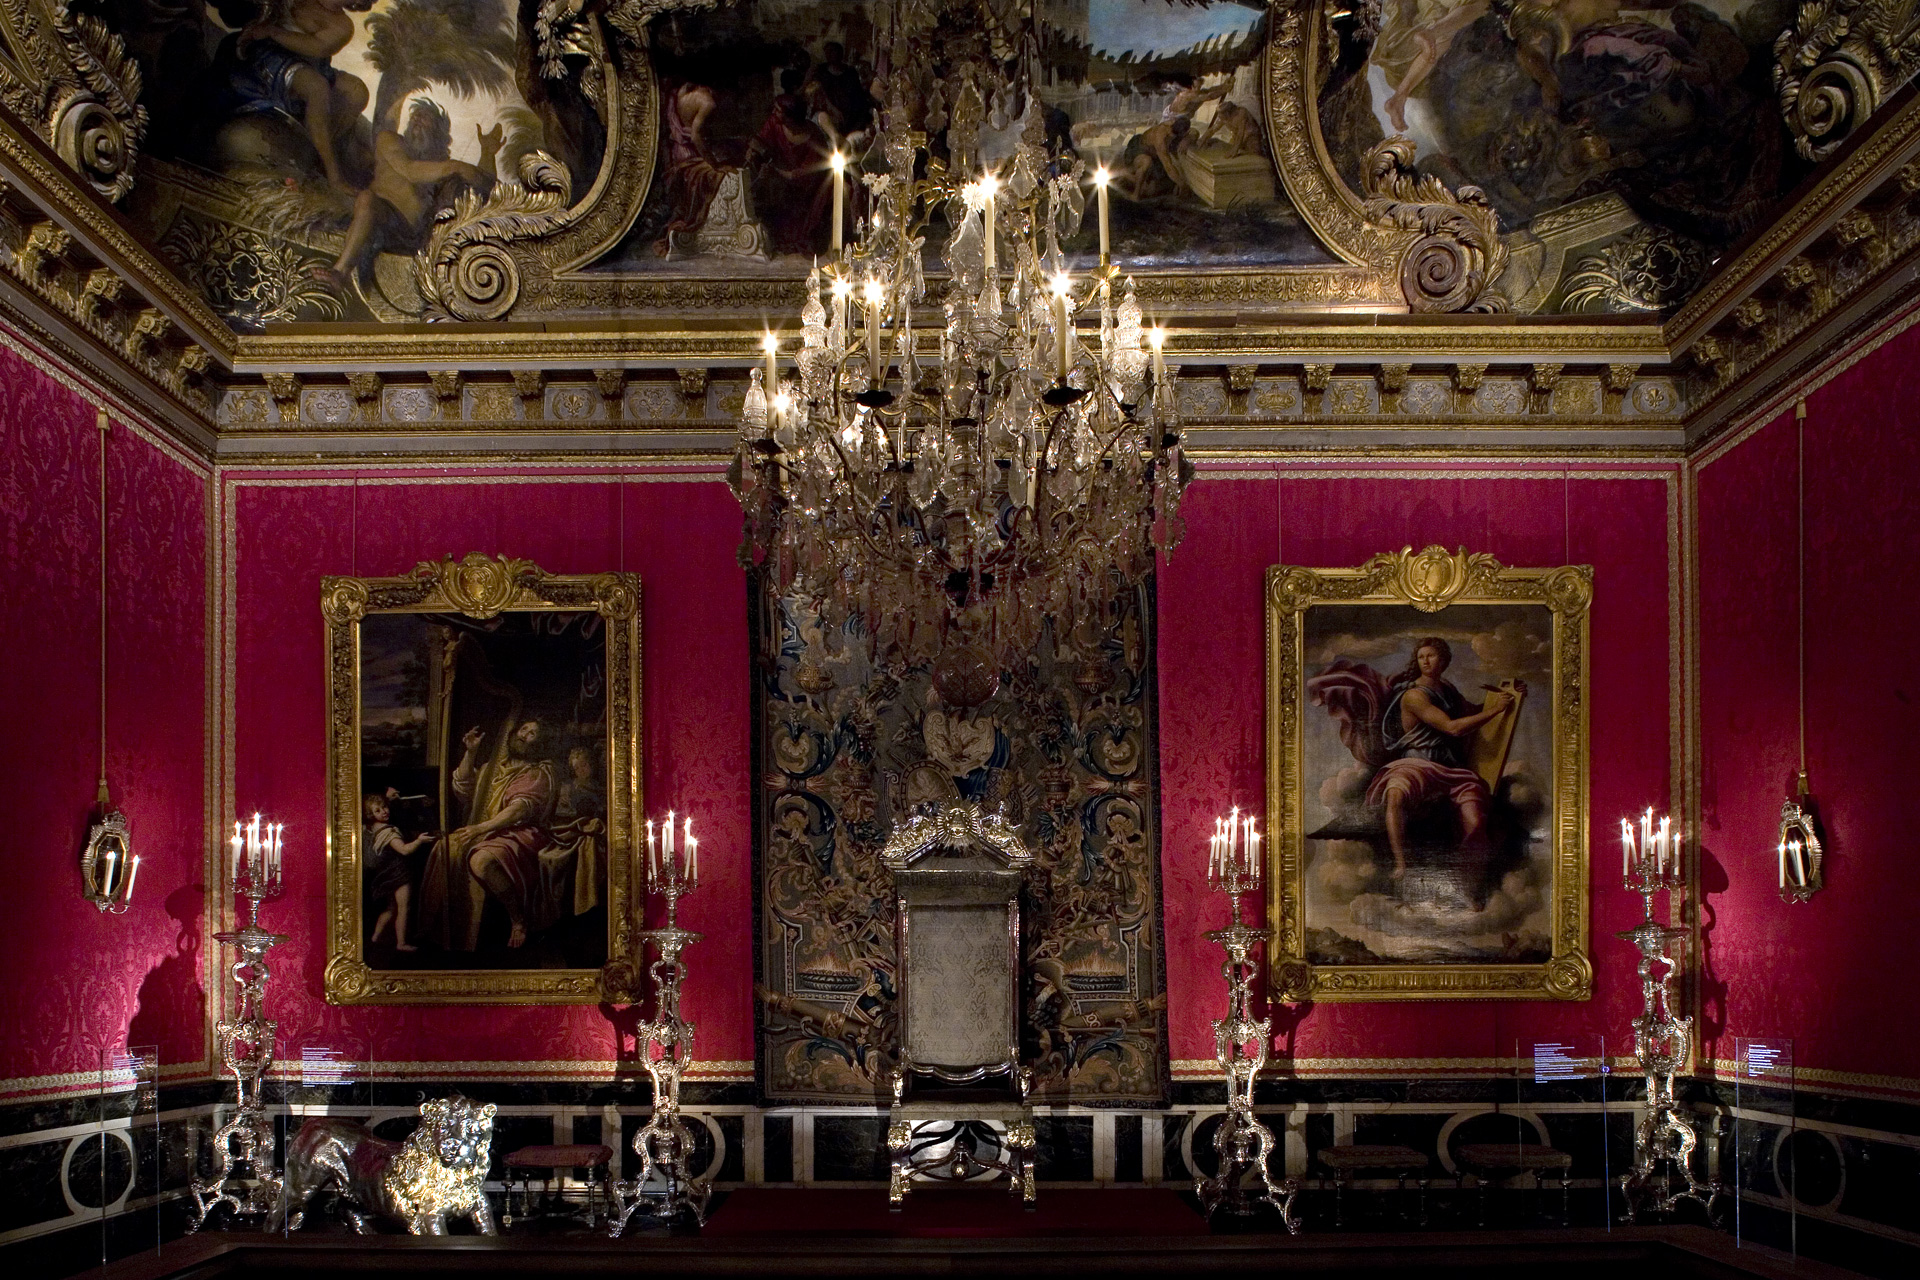 mobilier argent - Exposition "Quand Versailles était meublé d'argent" (2007) SCENOGRAPHIE-DU-MOBILIER-D-ARGENT-AU-CHATEAU-DE-VERSAILLES-2